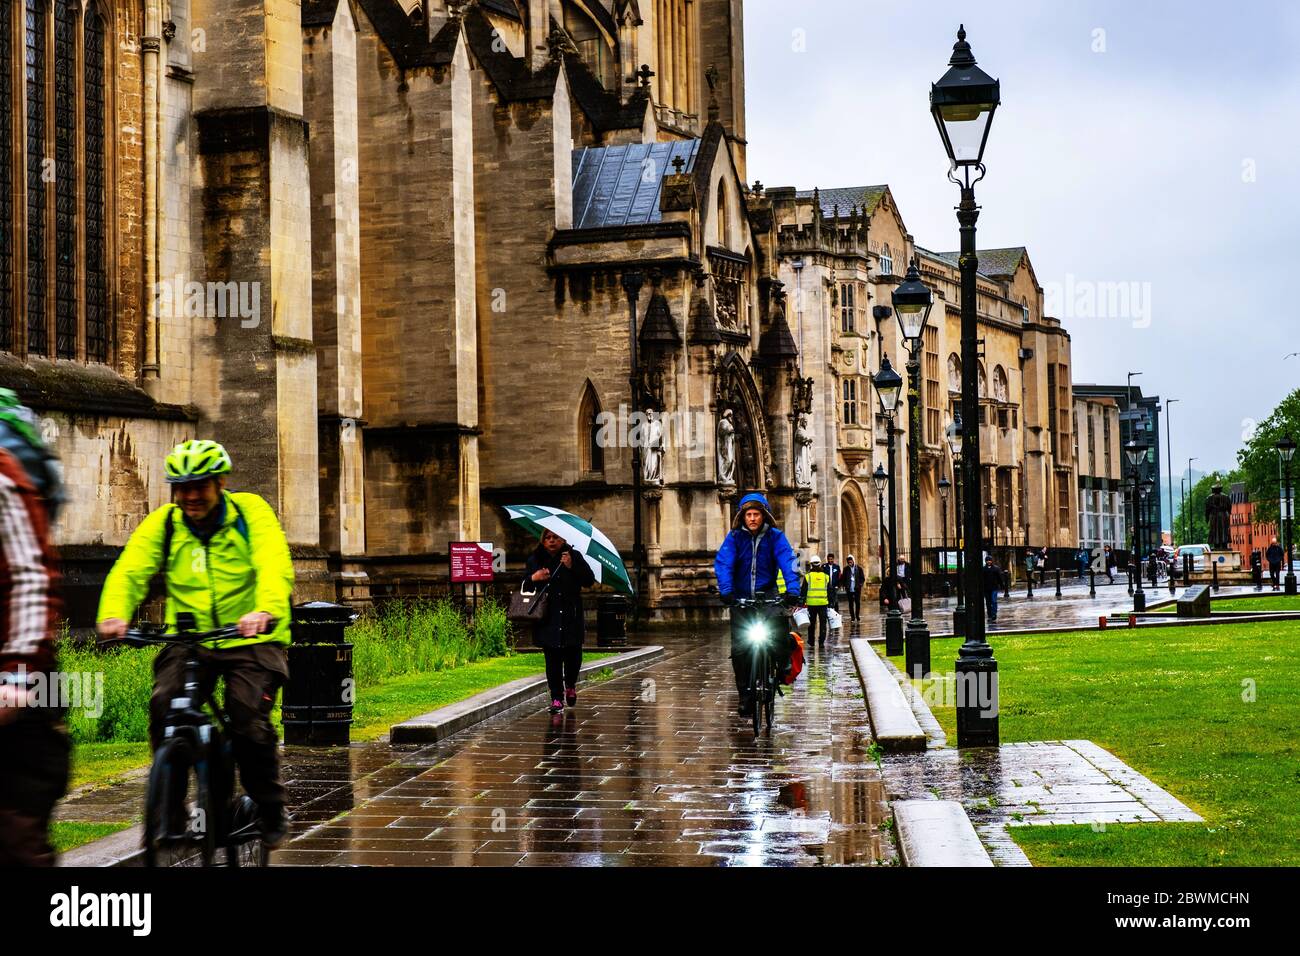 BRISTOL, Regno Unito - 17 Maggio 2017: persone nel centro di Bristol, Regno Unito durante la giornata di pioggia. Luminoso cielo nuvoloso. Cattedrale e degli edifici storici Foto Stock